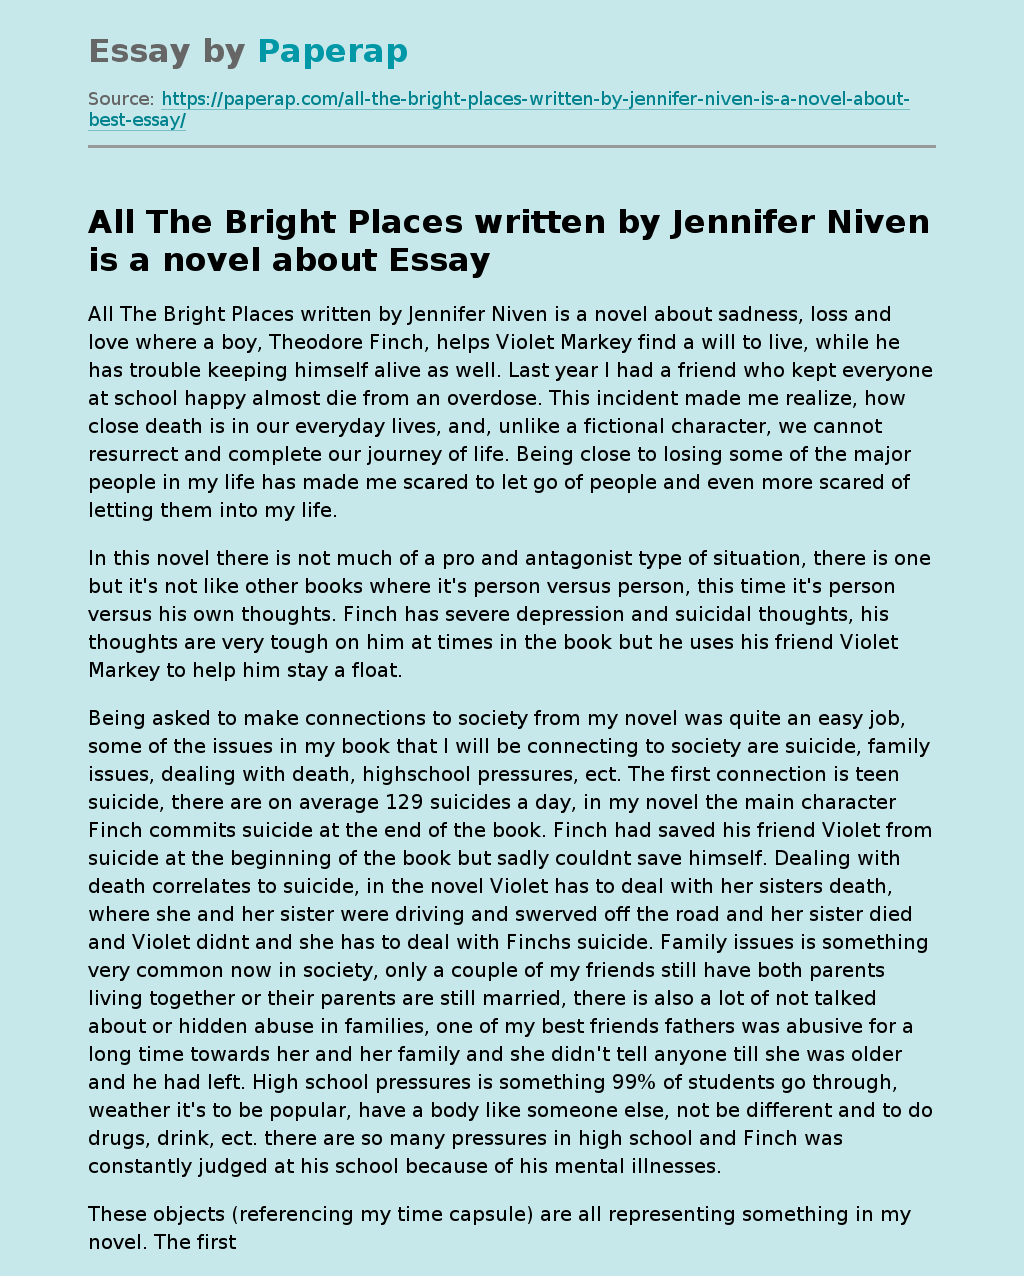 All The Bright Places written by Jennifer Niven is a novel about